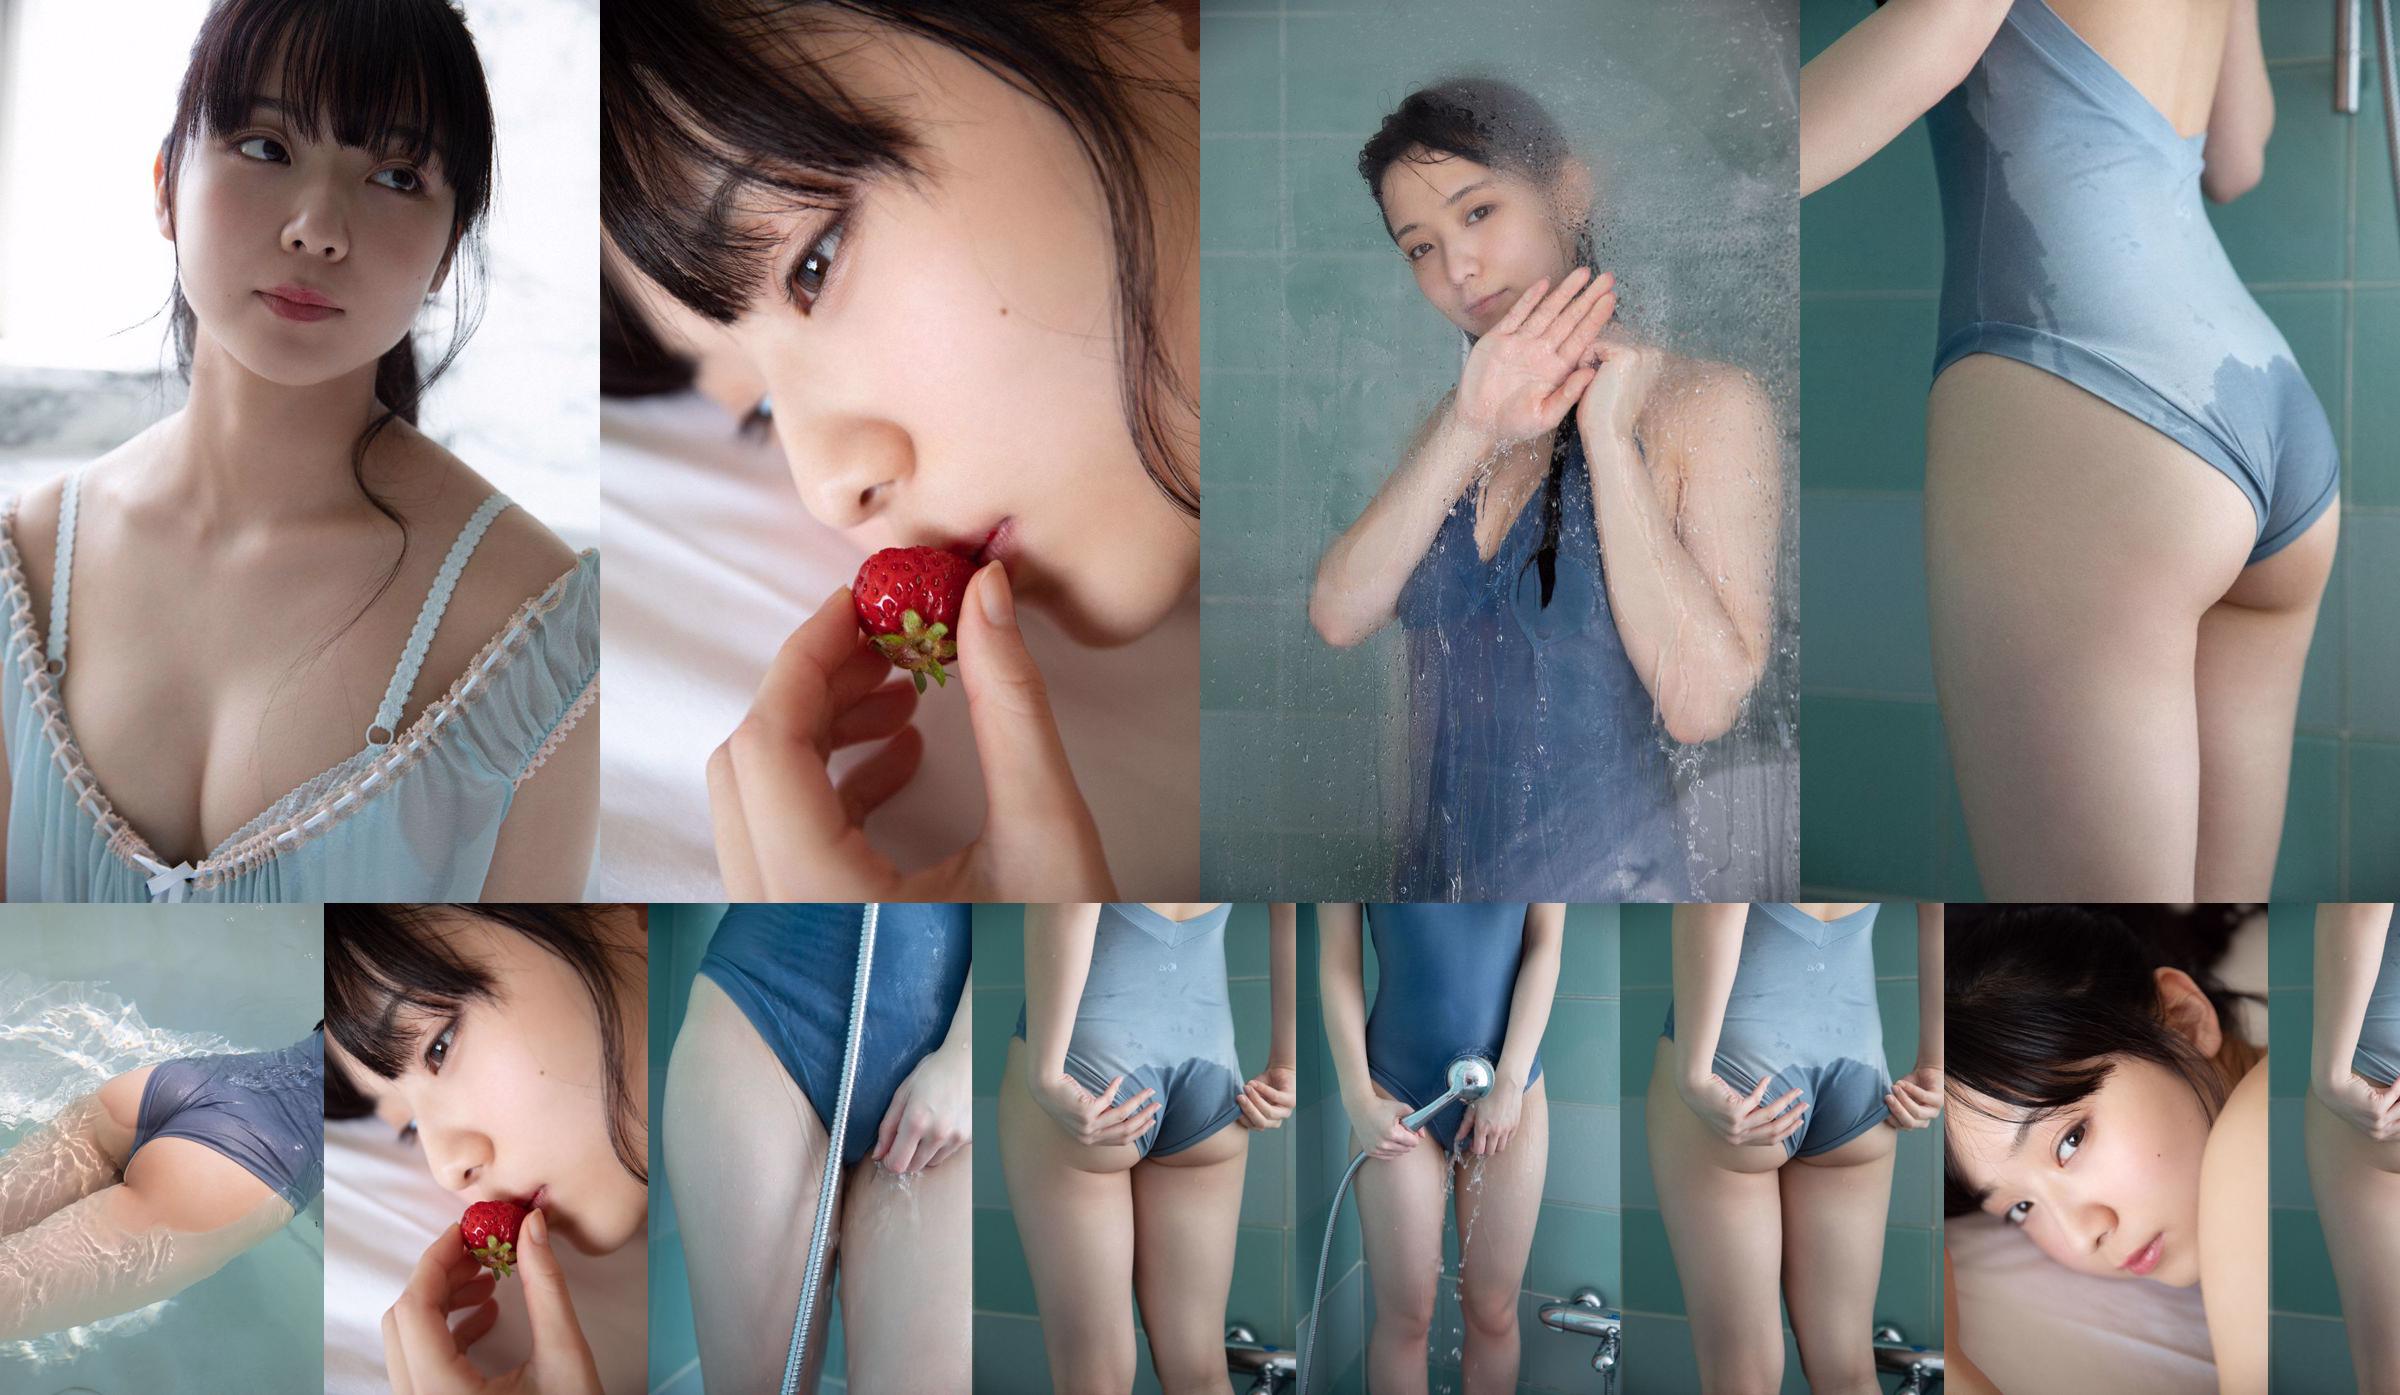 [THỨ SÁU] Mio Imada "Phép màu của nữ diễn viên + bikini trong phim truyền hình" Hana nochi Hare "" Ảnh No.b0fc59 Trang 1